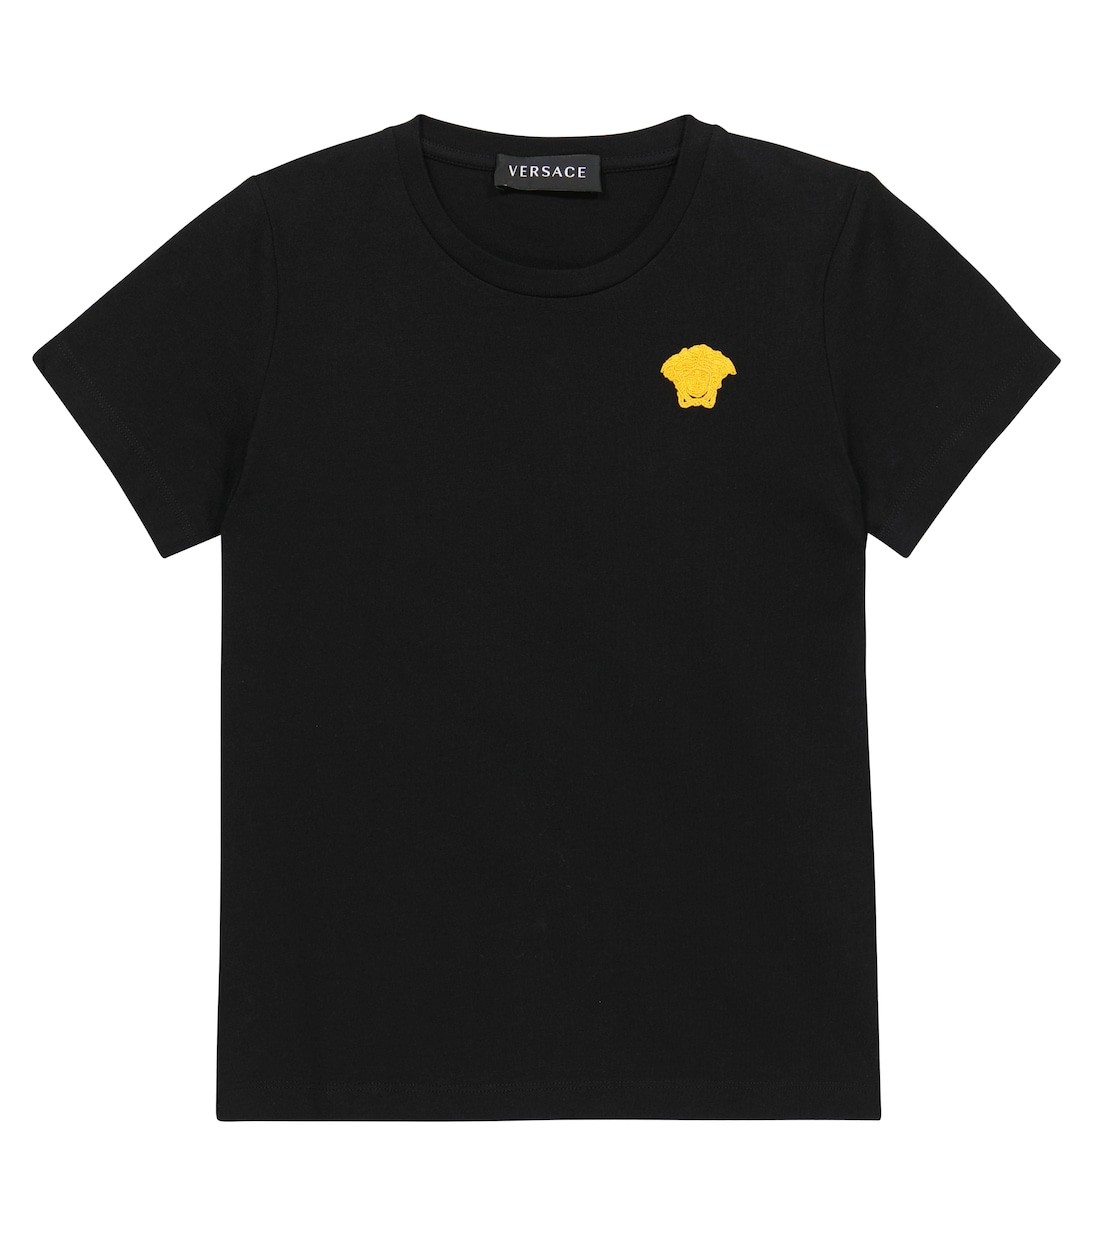 Футболка из хлопкового джерси с вышивкой Versace, черный футболка tangie из хлопкового джерси стрейч с овальной вышивкой d diesel цвет a100